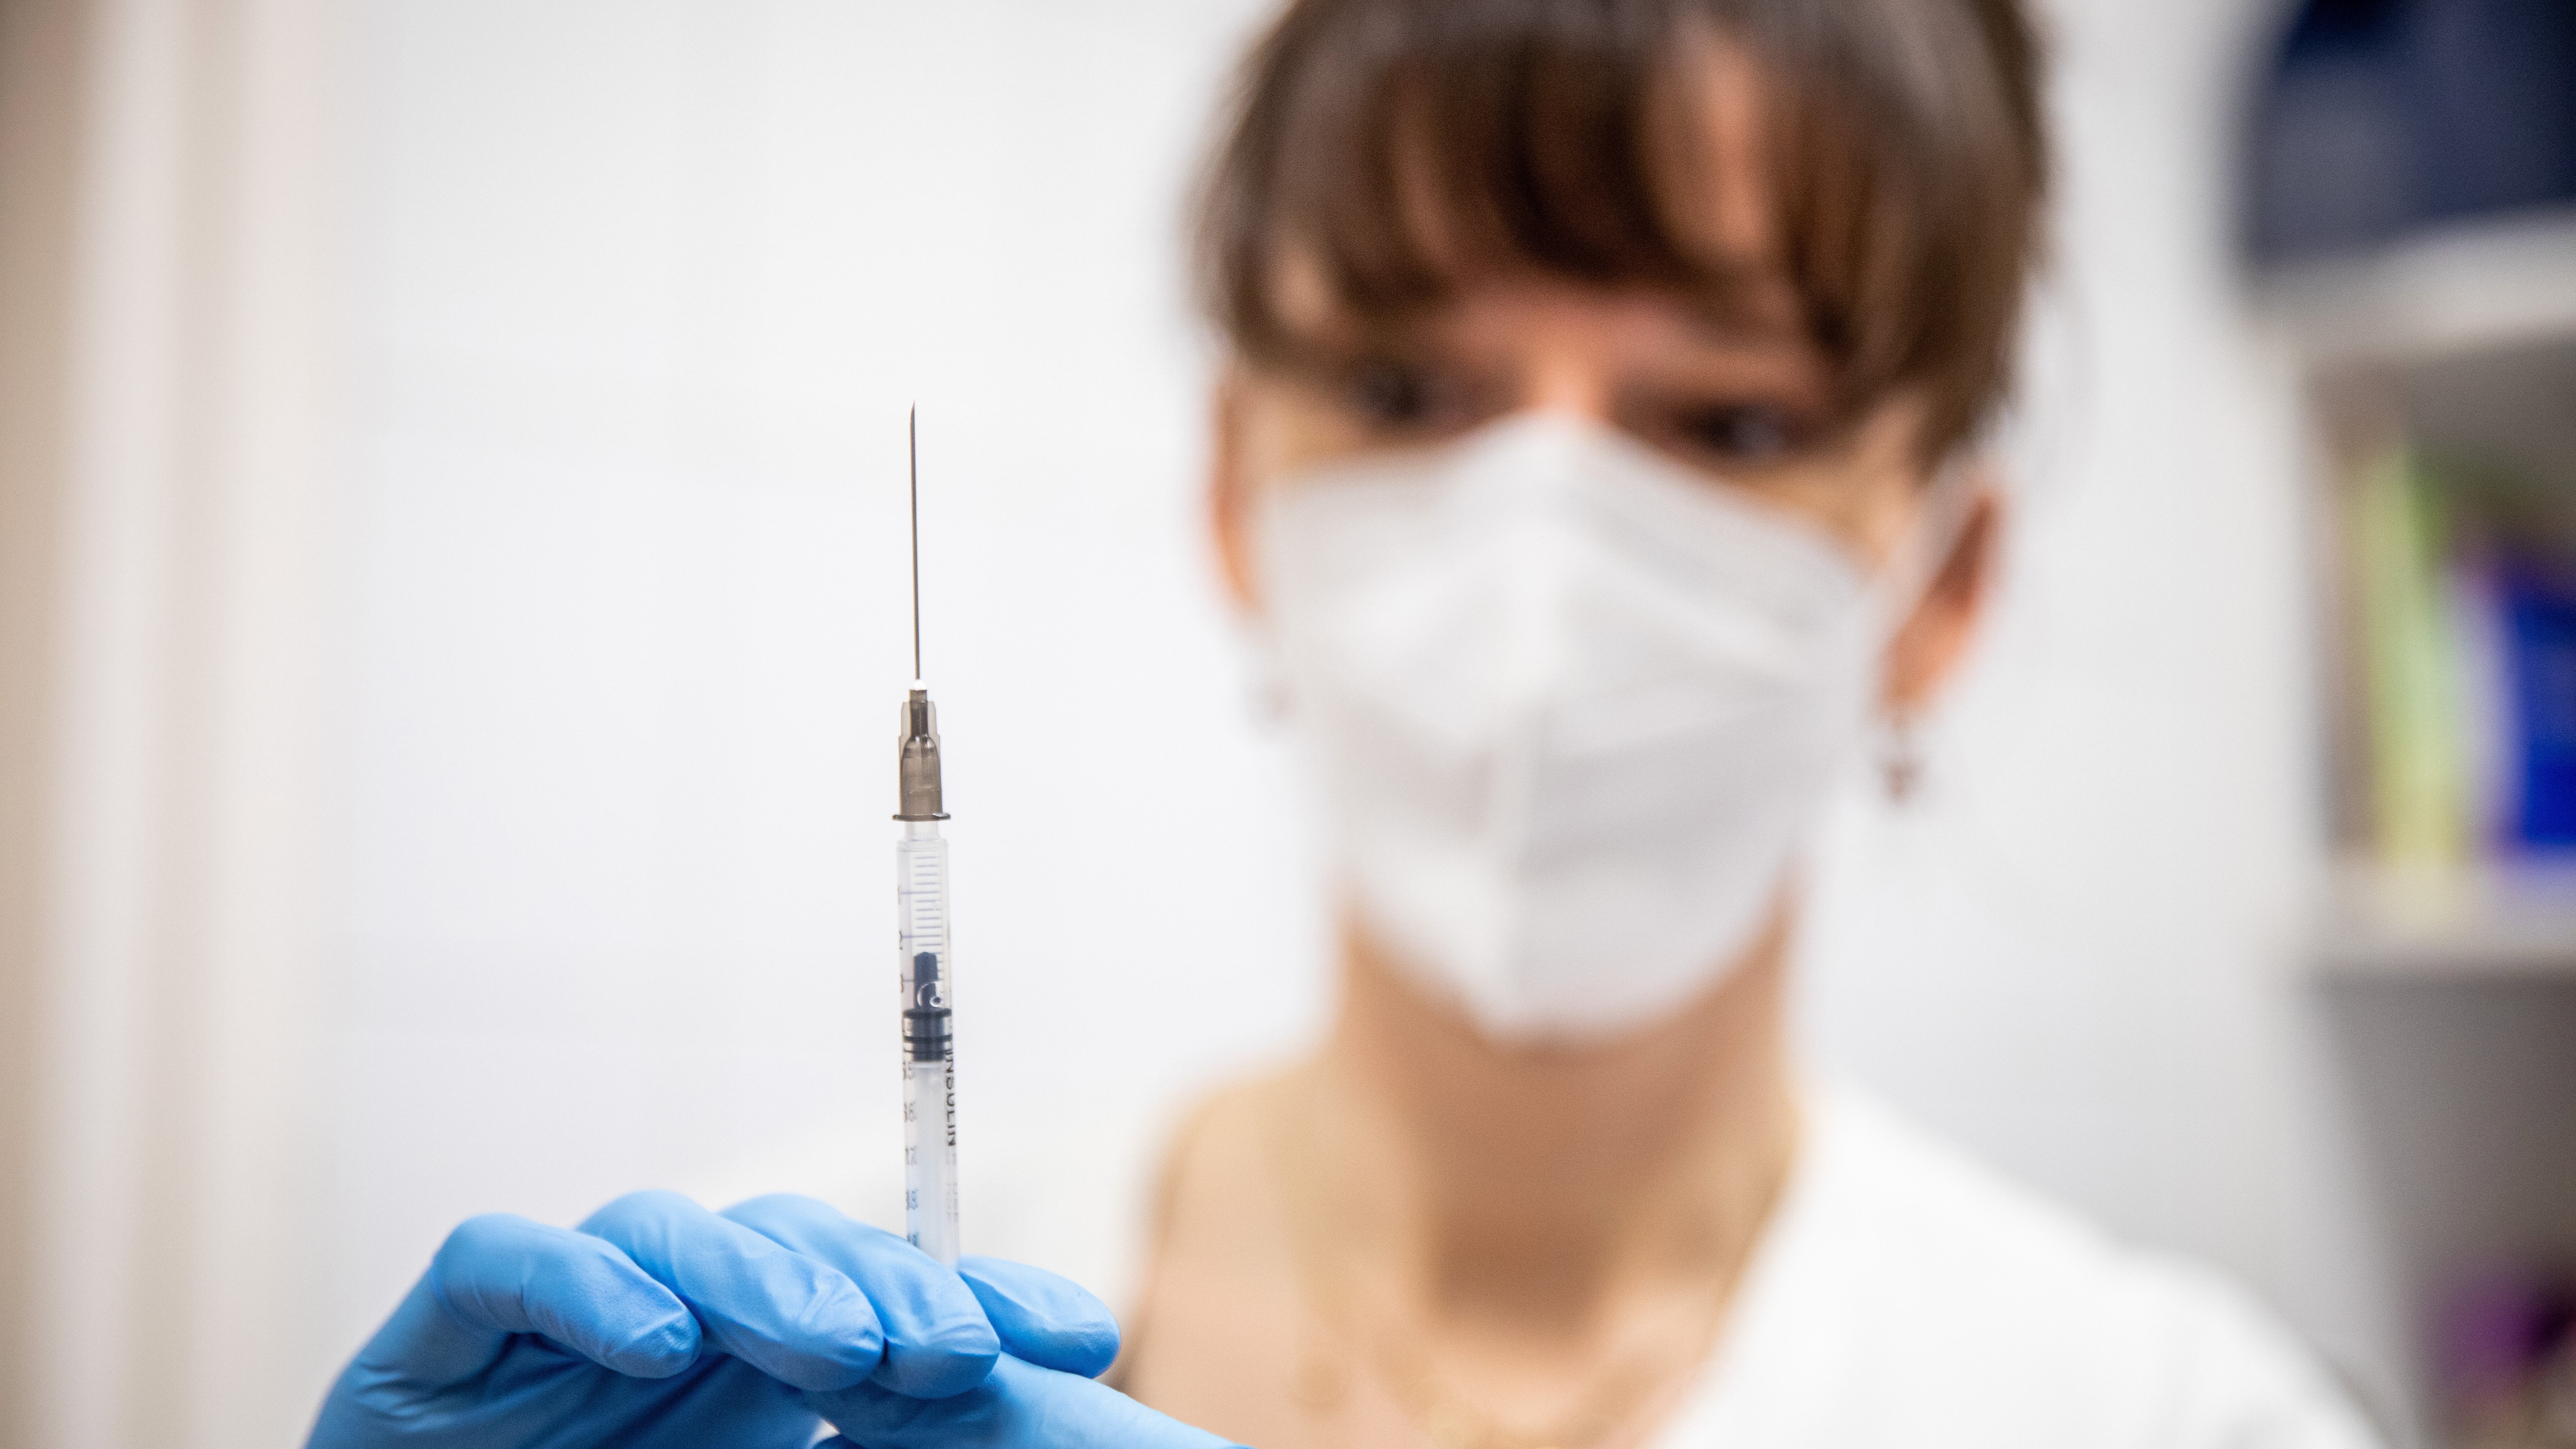 Egészségügyi dolgozó a Pfizer-BioNTech koronavírus elleni vakcináját készítik elő az oltáshoz a Szegedi Tudományegyetem Bőrgyógyászati és Allergológiai Klinikáján 2021. január 23-án.